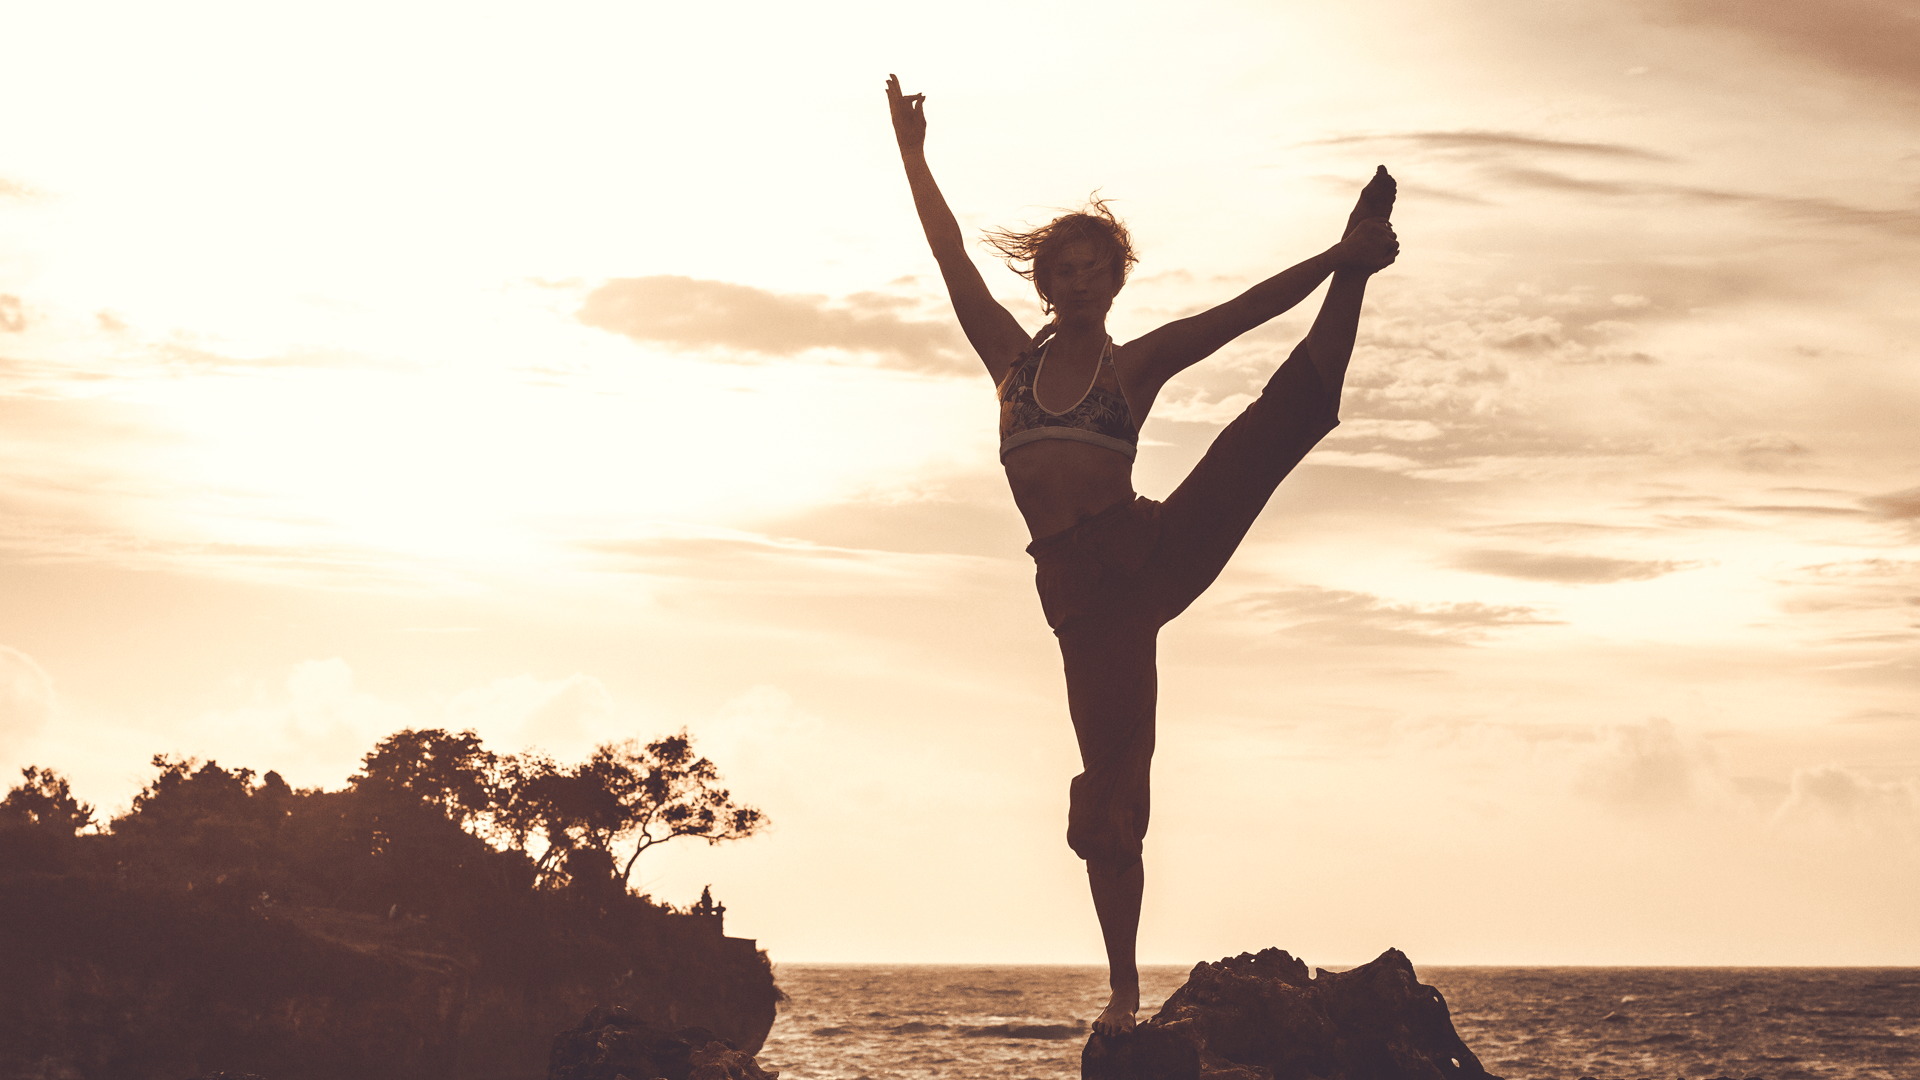 Muốn học cách xoạc chân “chuẩn” trong yoga, tập 9 động tác này trước đã